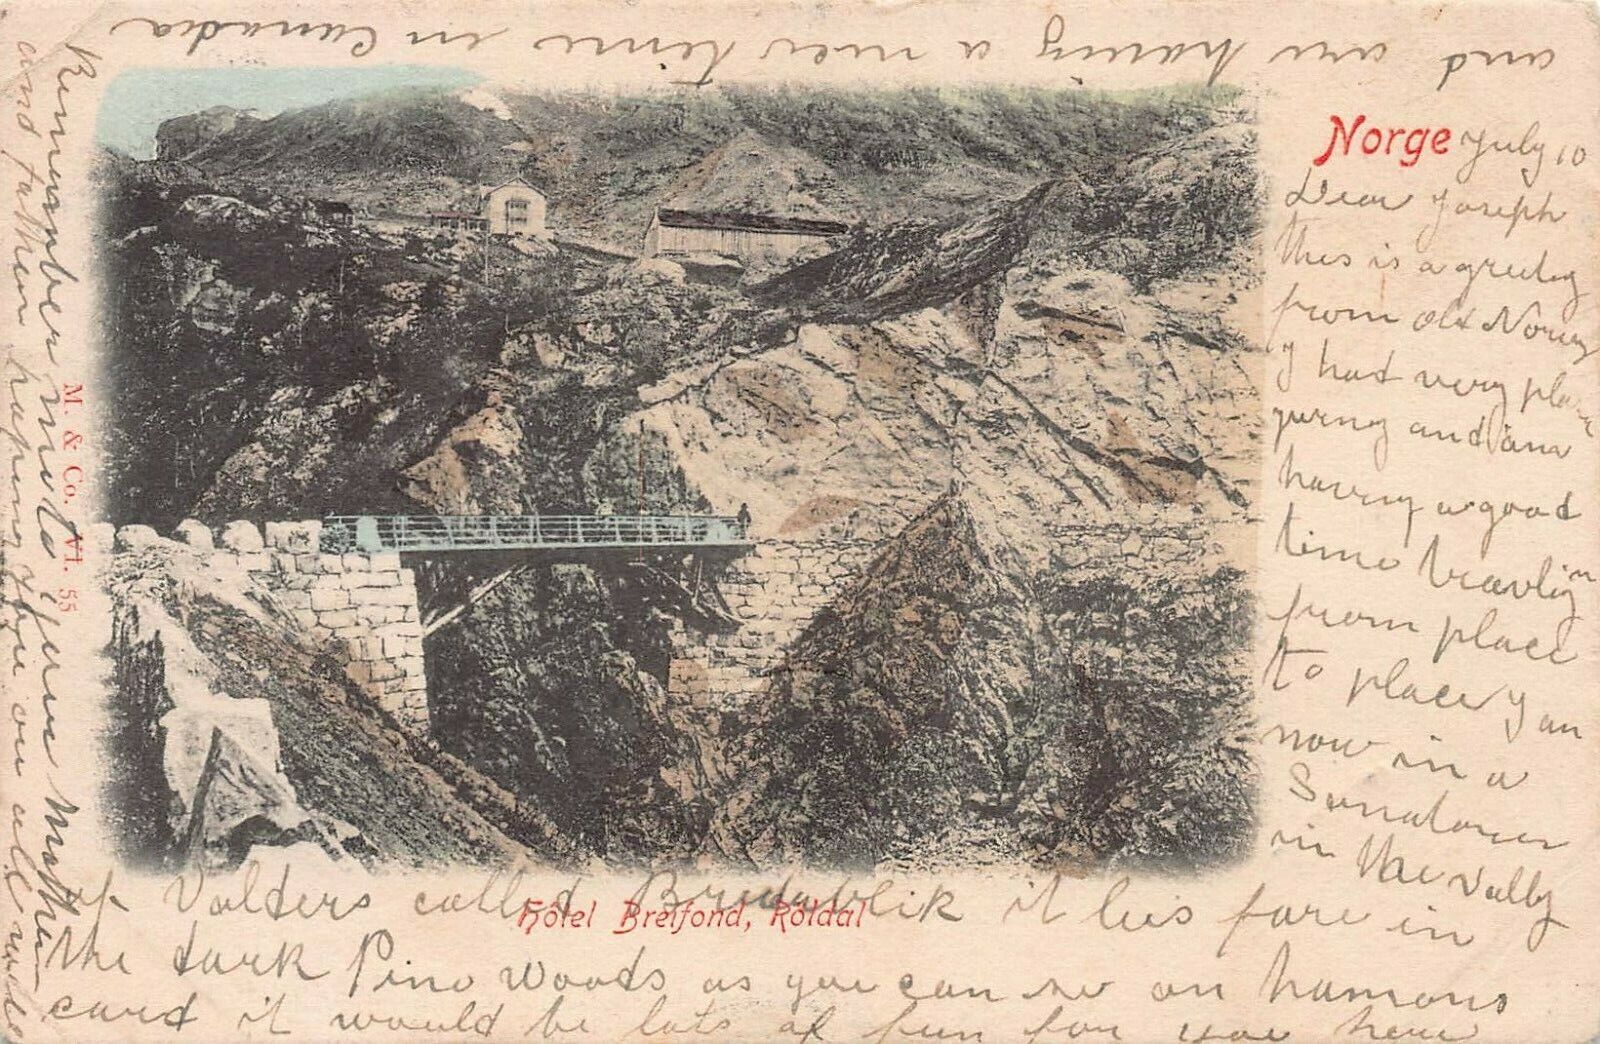 Hotel Breifond, Roldal, Norway, Early Postcard, Used in 1903, to Waterford, N.Y.